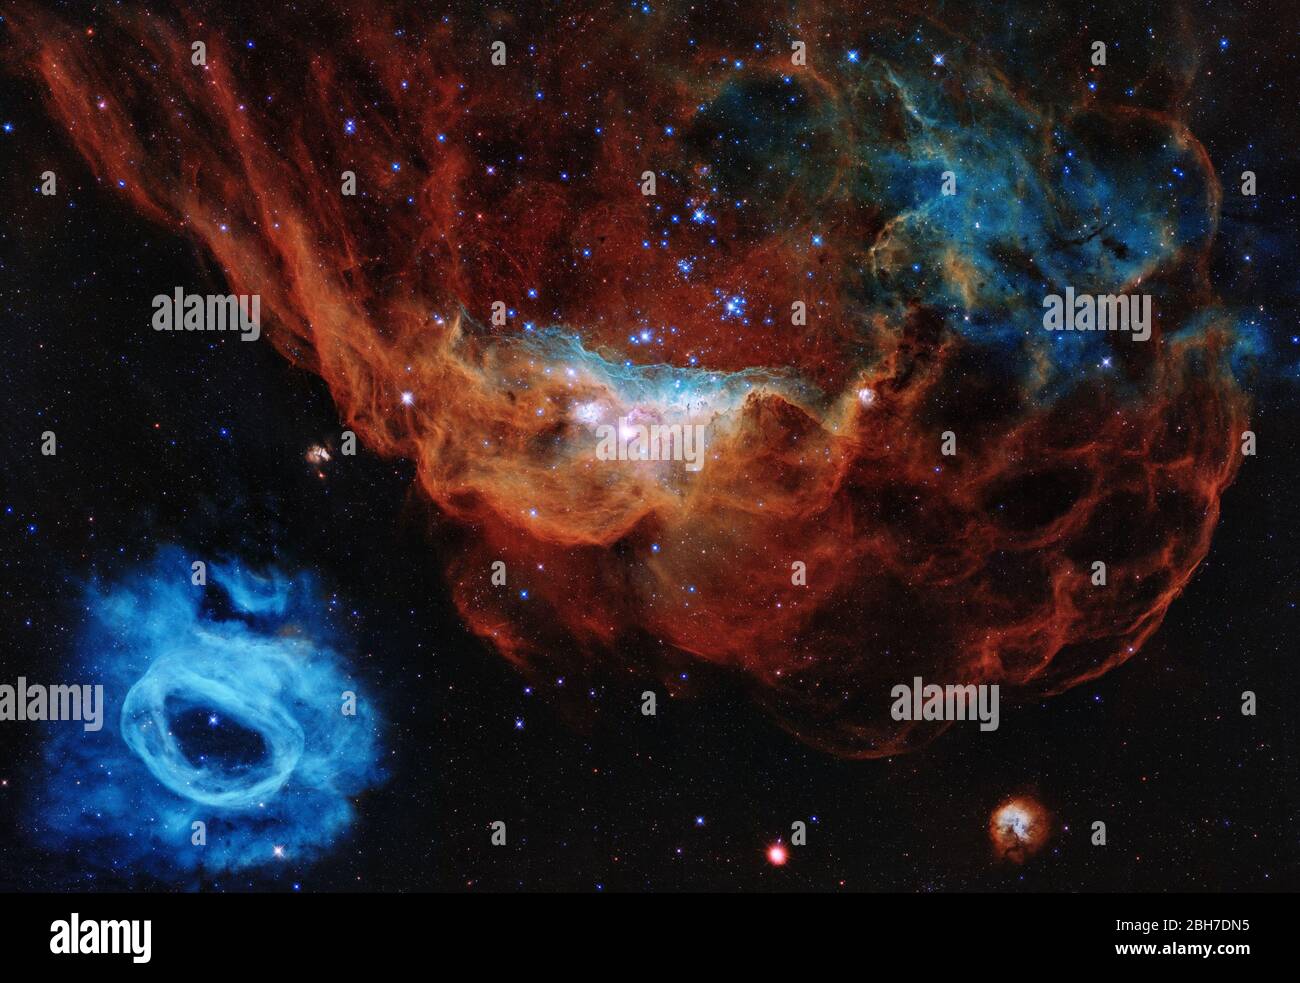 Washington, Stati Uniti. 24 Aprile 2020. Questa immagine è uno degli esempi più fotogenici dei molti vivai stellari turbolenti che il telescopio spaziale NASA/ESA Hubble ha osservato durante i suoi 30 anni di vita. Il ritratto presenta la gigantesca nebulosa NGC 2014 e il suo vicino NGC 2020, che insieme fanno parte di una vasta regione che forma stelle nella grande Nuvola Magellanica, una galassia satellitare della Via Lattea, a circa 163,000 anni luce di distanza. L'immagine è soprannominata la 'barriera cosmica' perché assomiglia ad un mondo sottomarino. NASA/ESA/UPI Credit: UPI/Alamy Live News Foto Stock